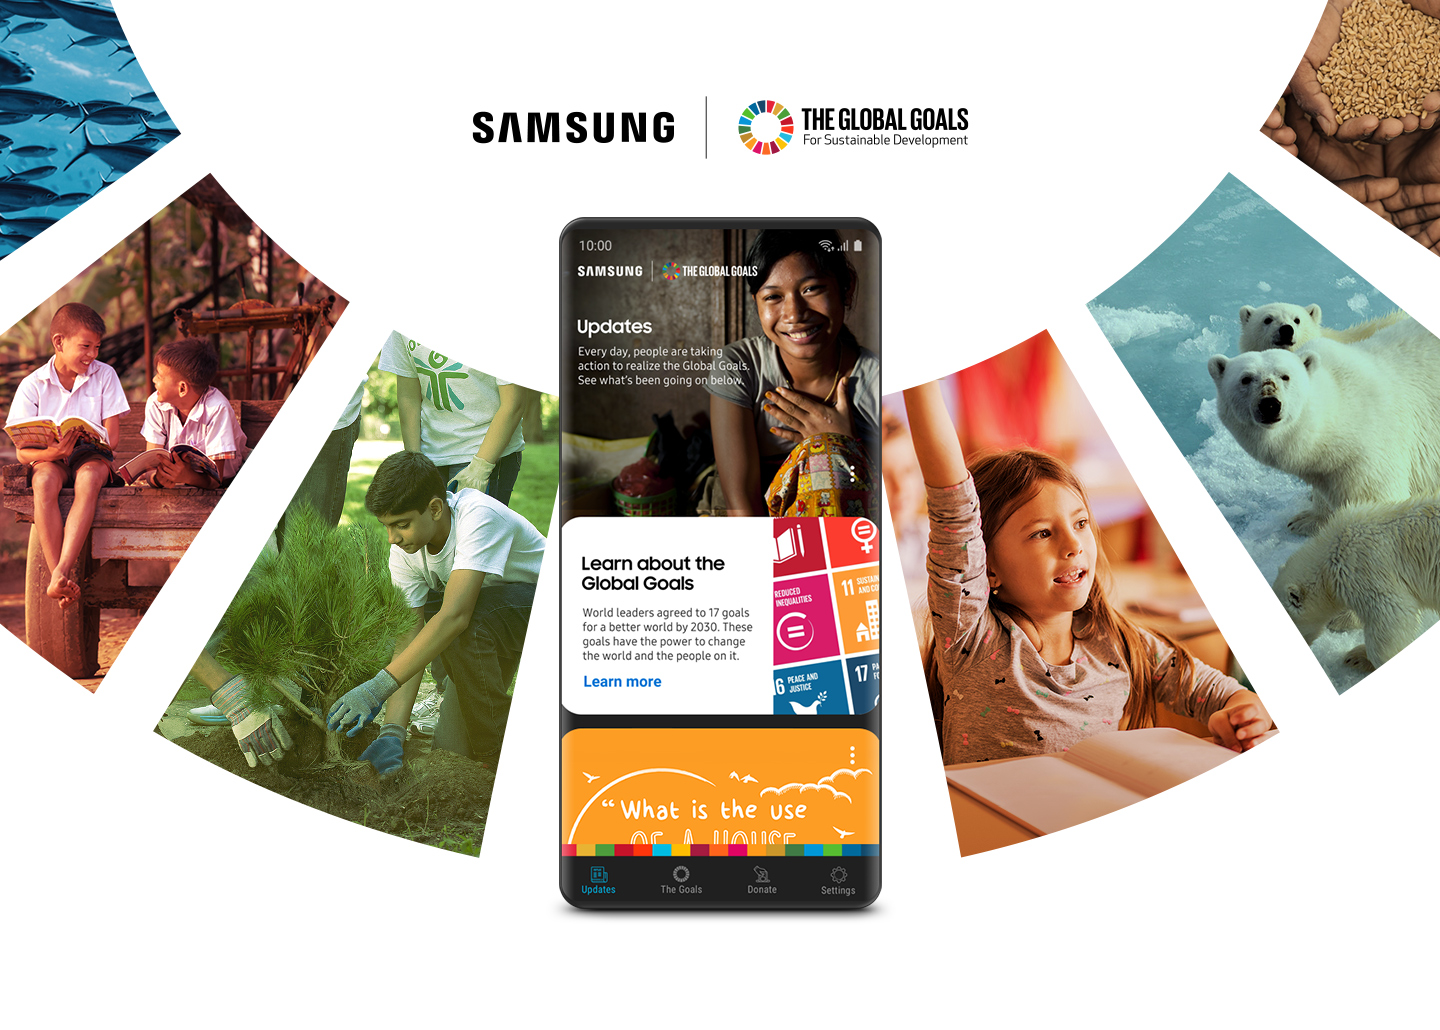 Samsung và UNDP công bố 6 nhà lãnh đạo trẻ tham gia vào Sáng kiến Mục tiêu Toàn cầu